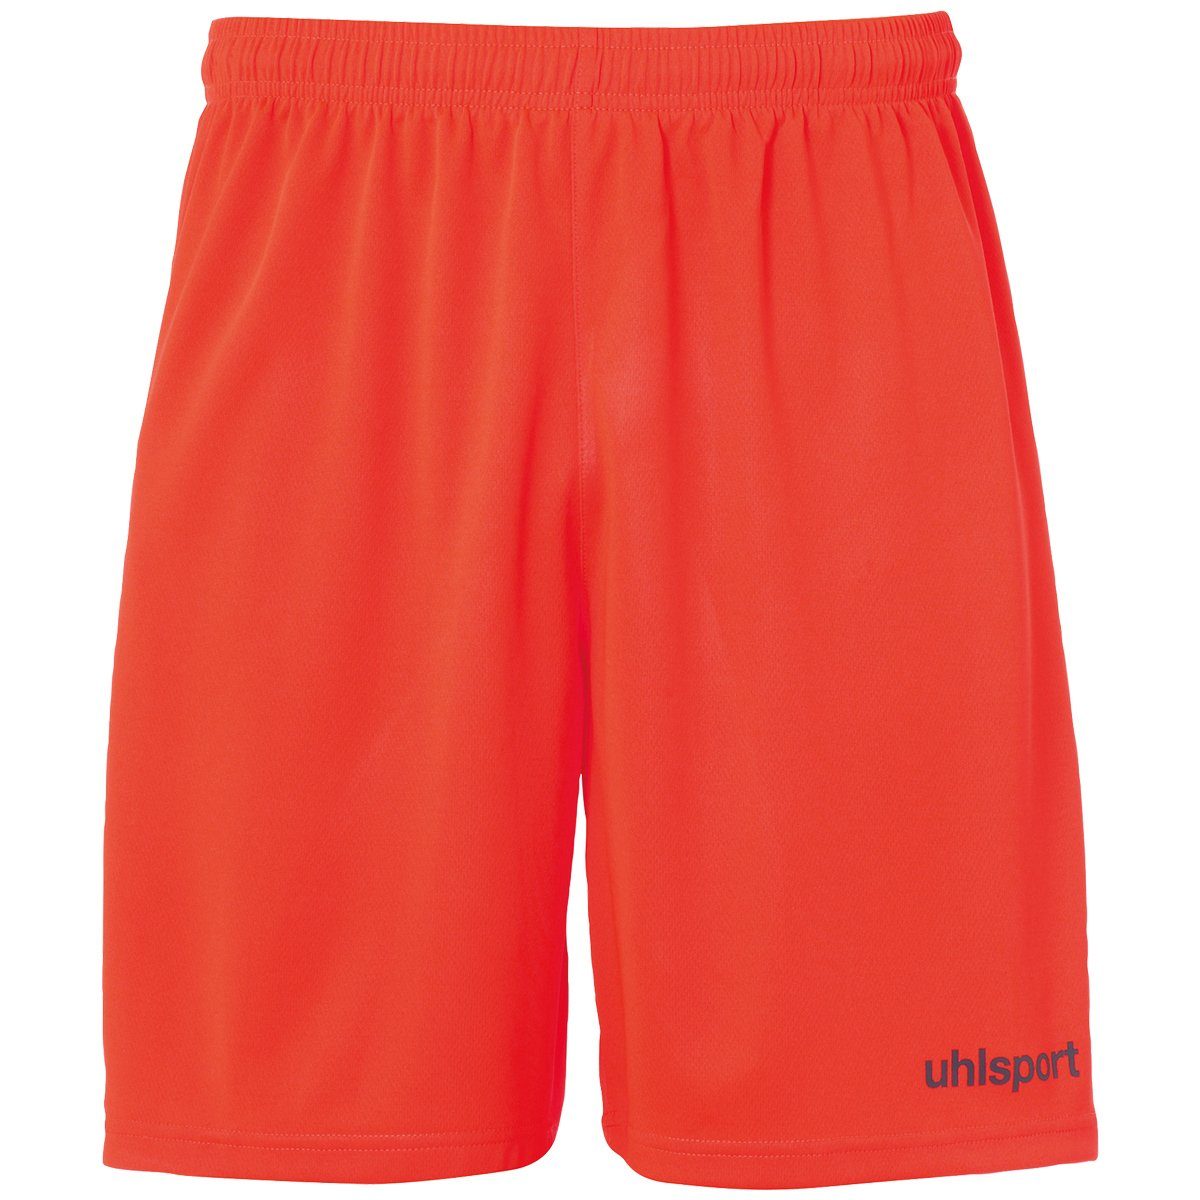 uhlsport Shorts uhlsport Shorts fluo rot/marine